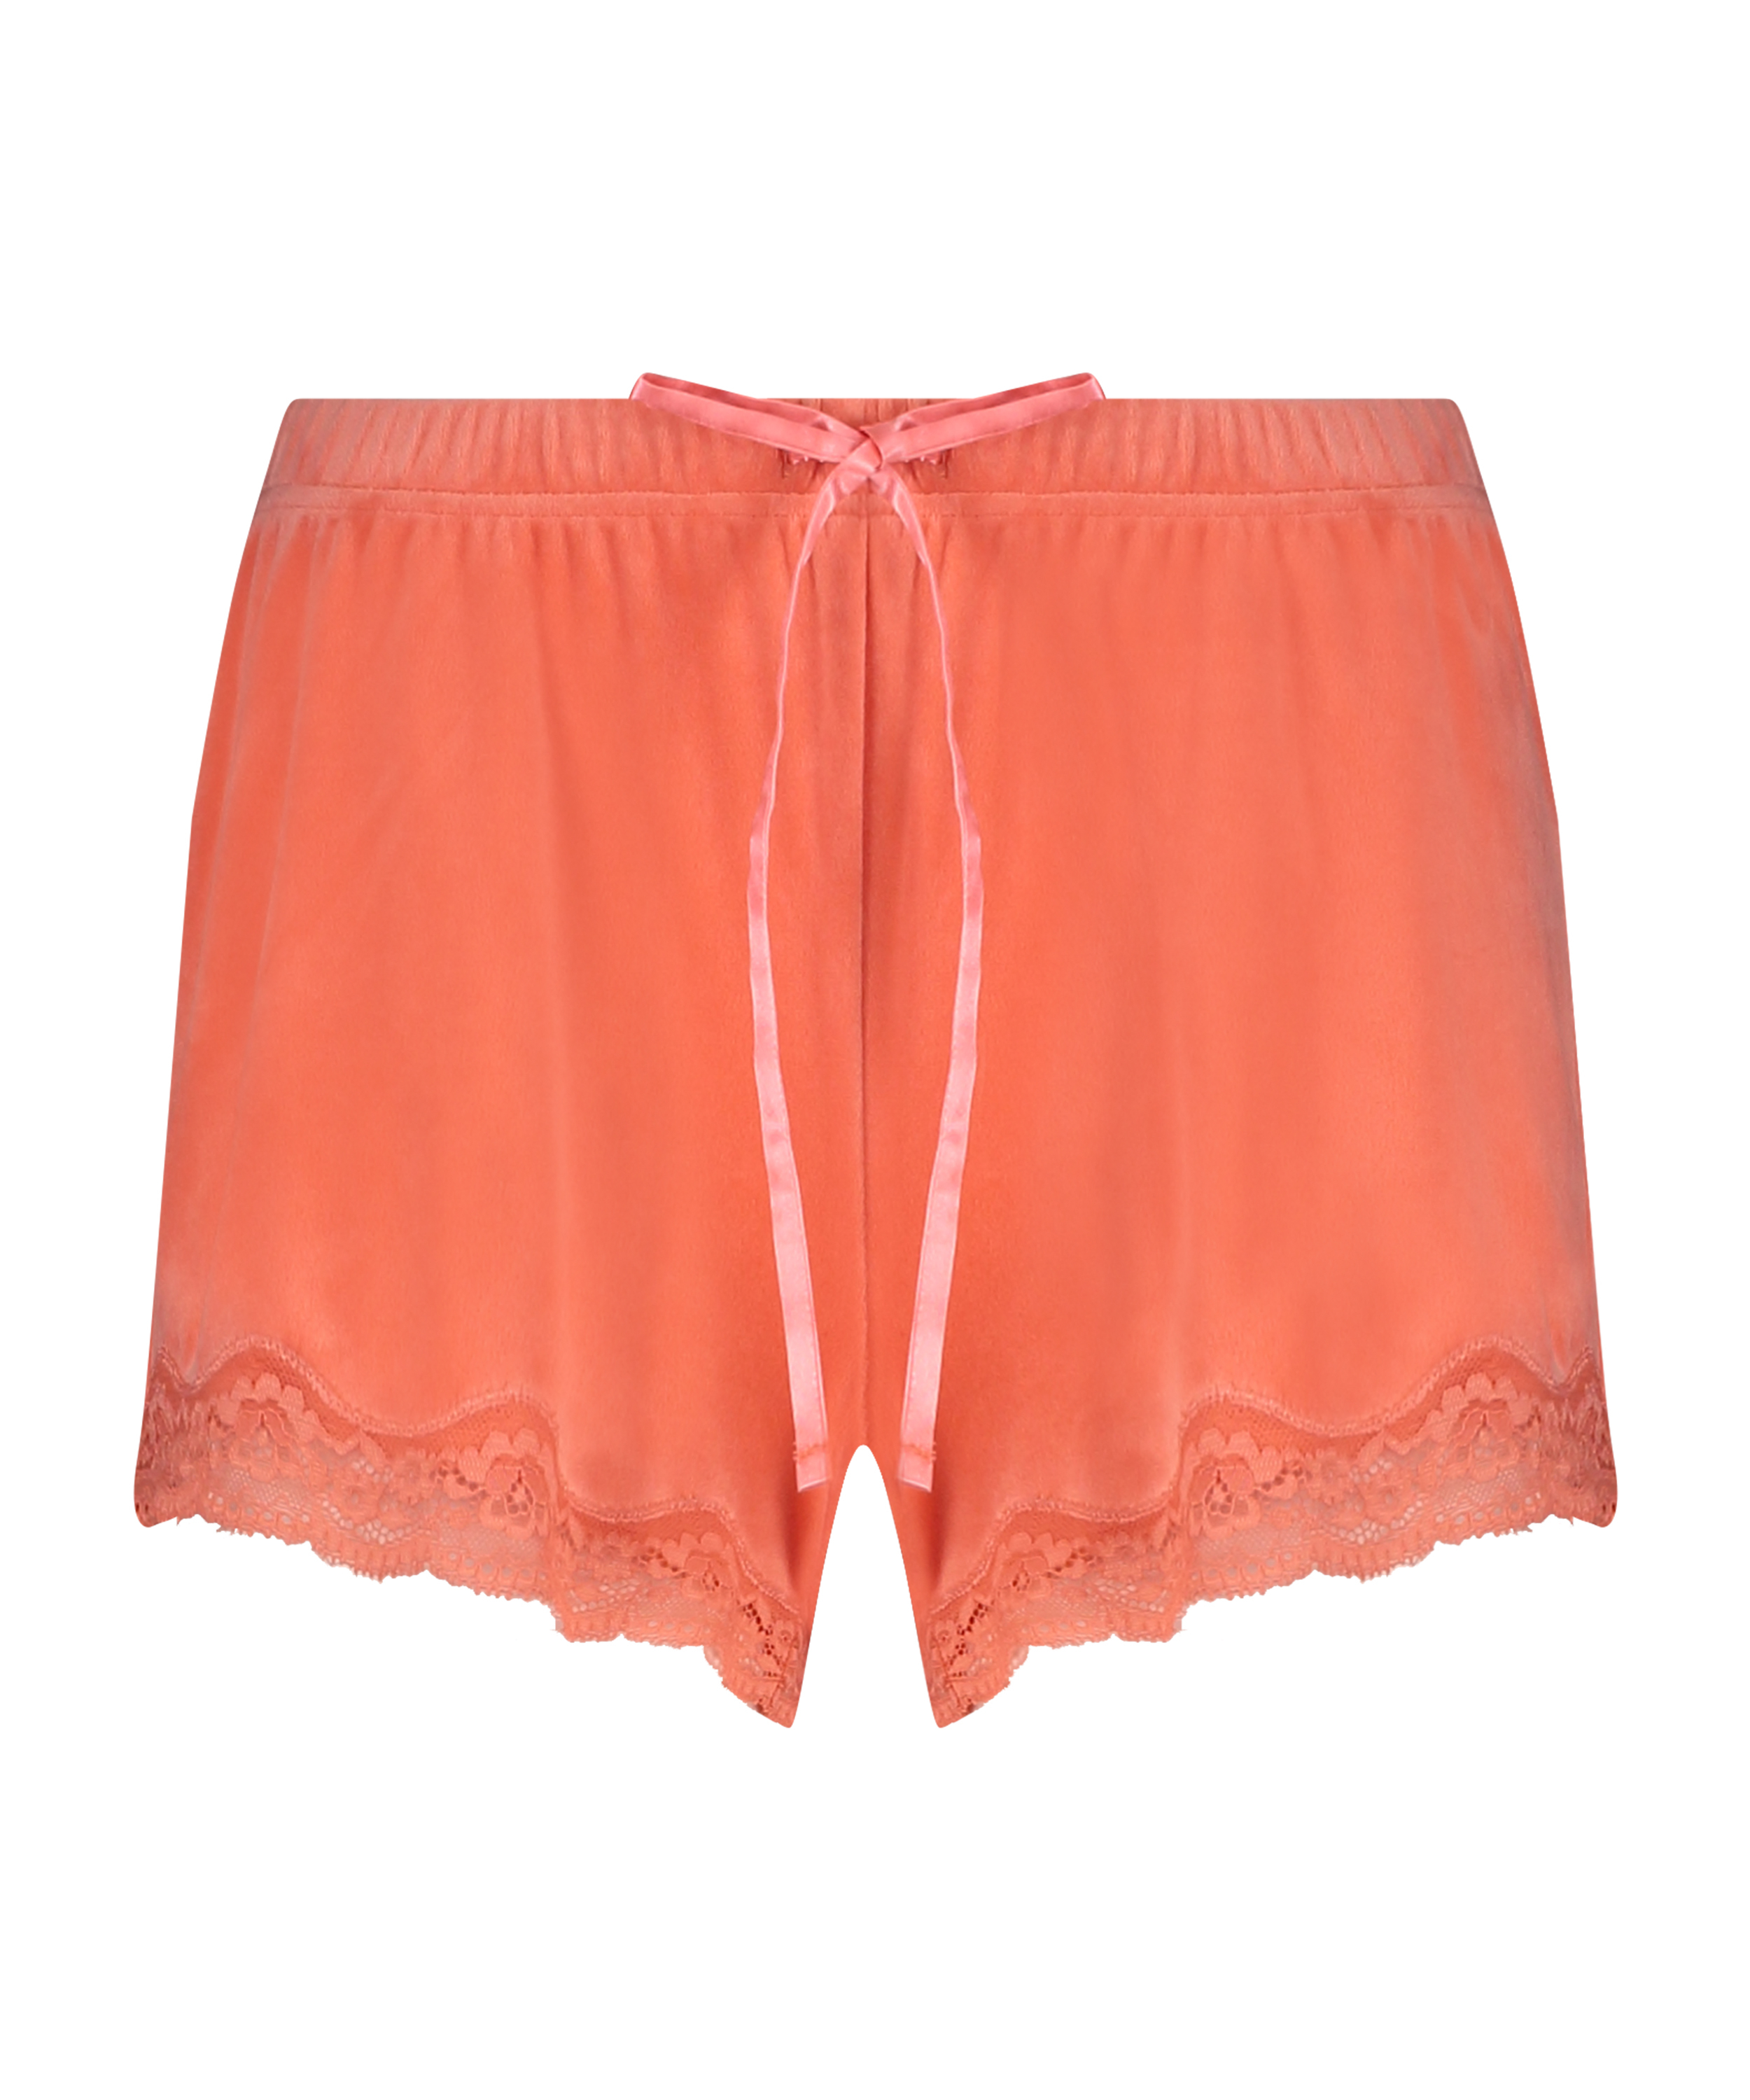 Shorts velour Lace, Orange, main